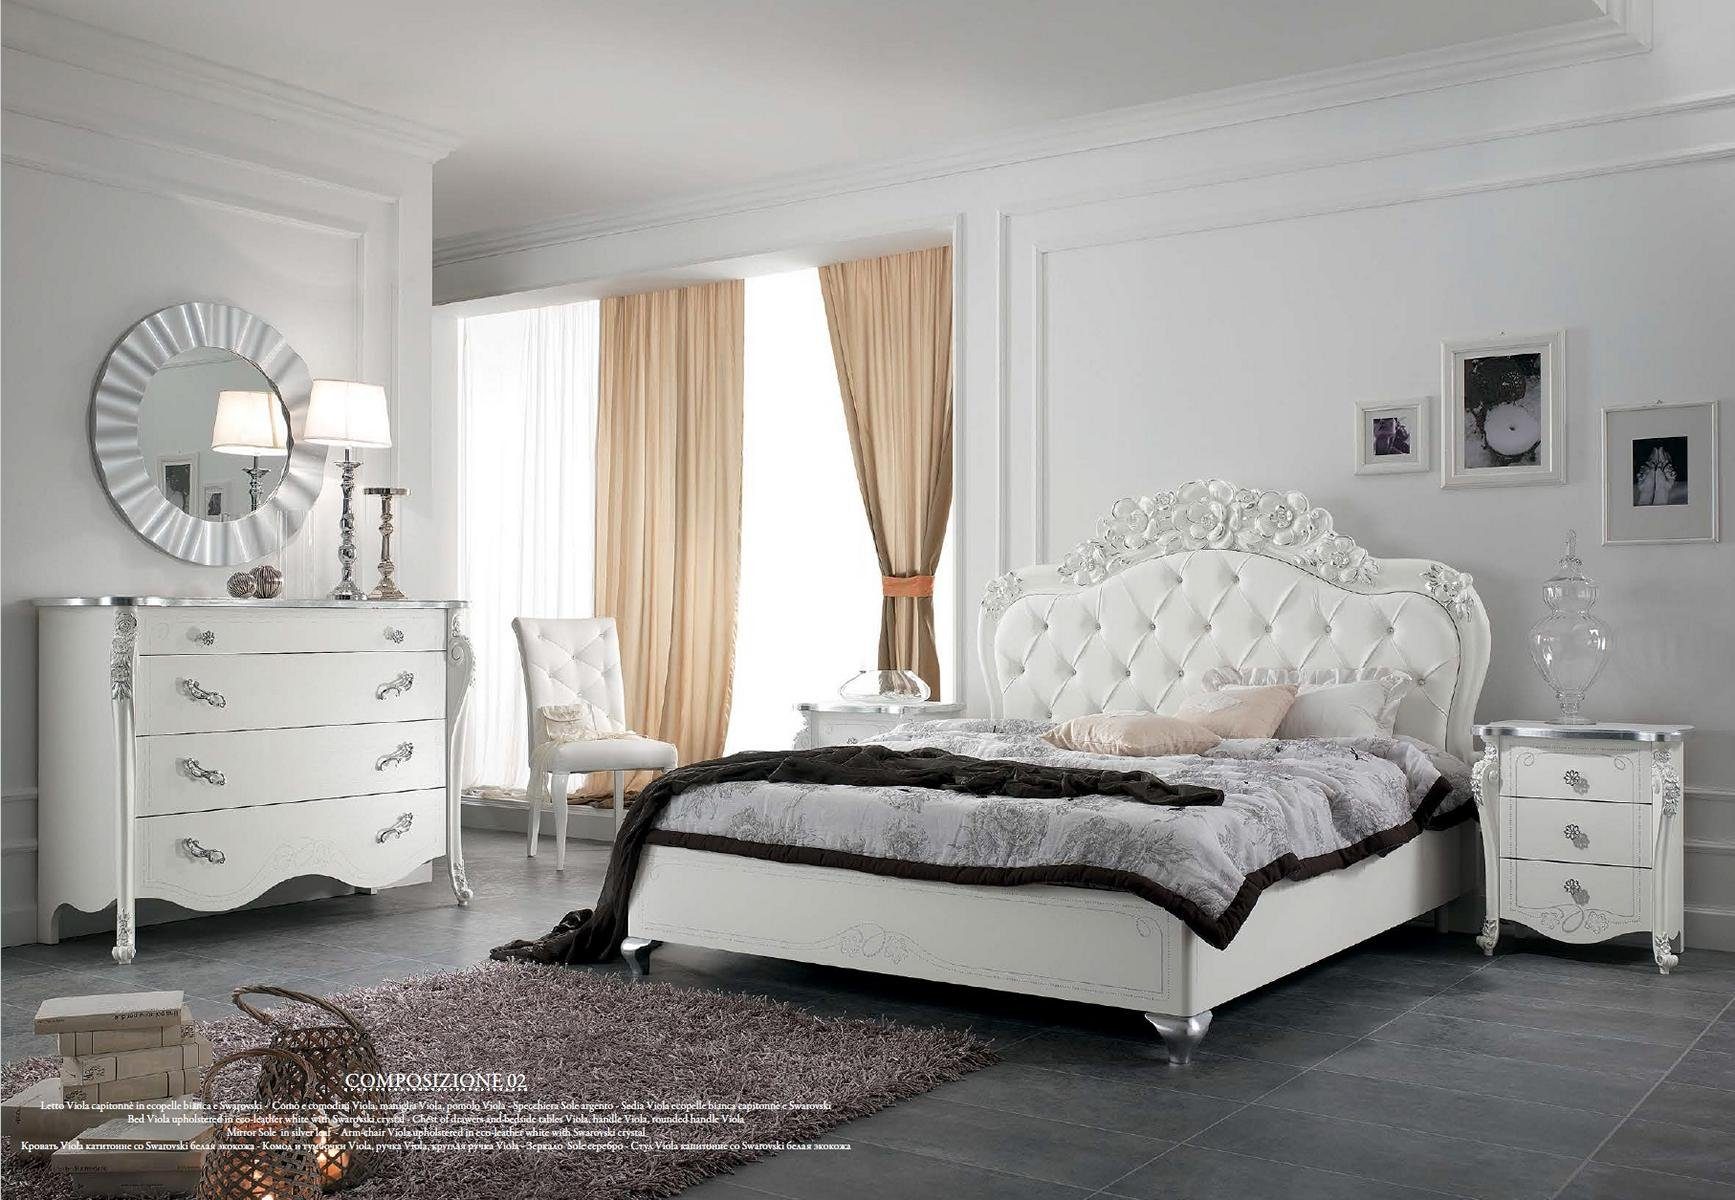 JVmoebel Bett Bett Stil Betten Holz Italienische Möbel Design Klassische Art déco (Bett)